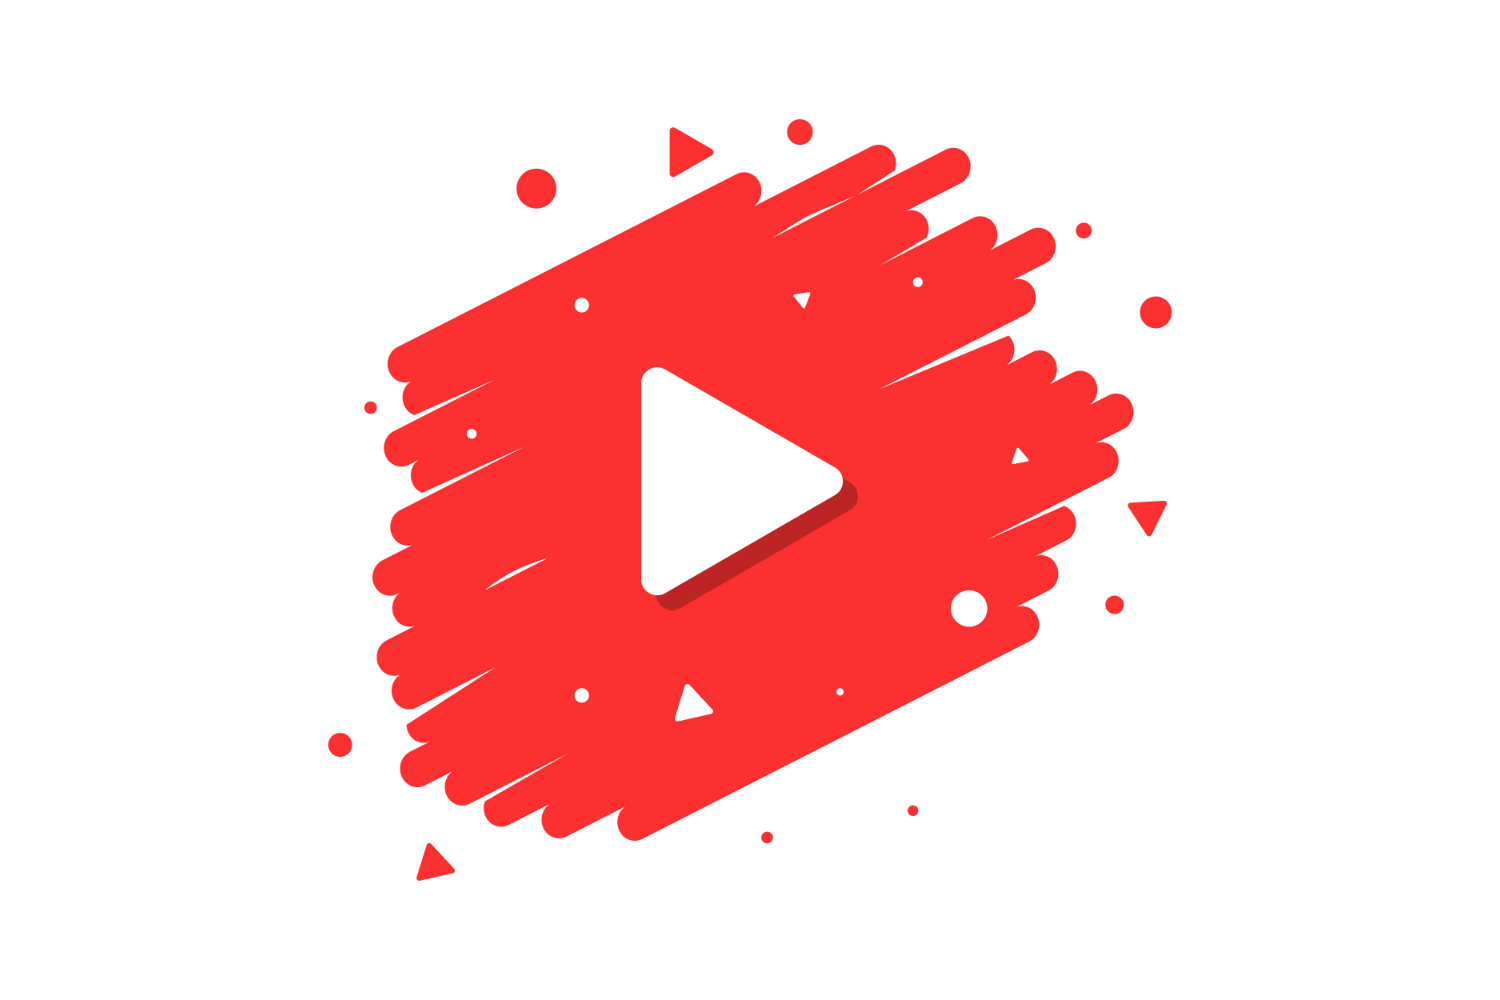 YouTube veut permettre aux artistes de mieux monétiser leurs audiences, selon son nouveau CEO